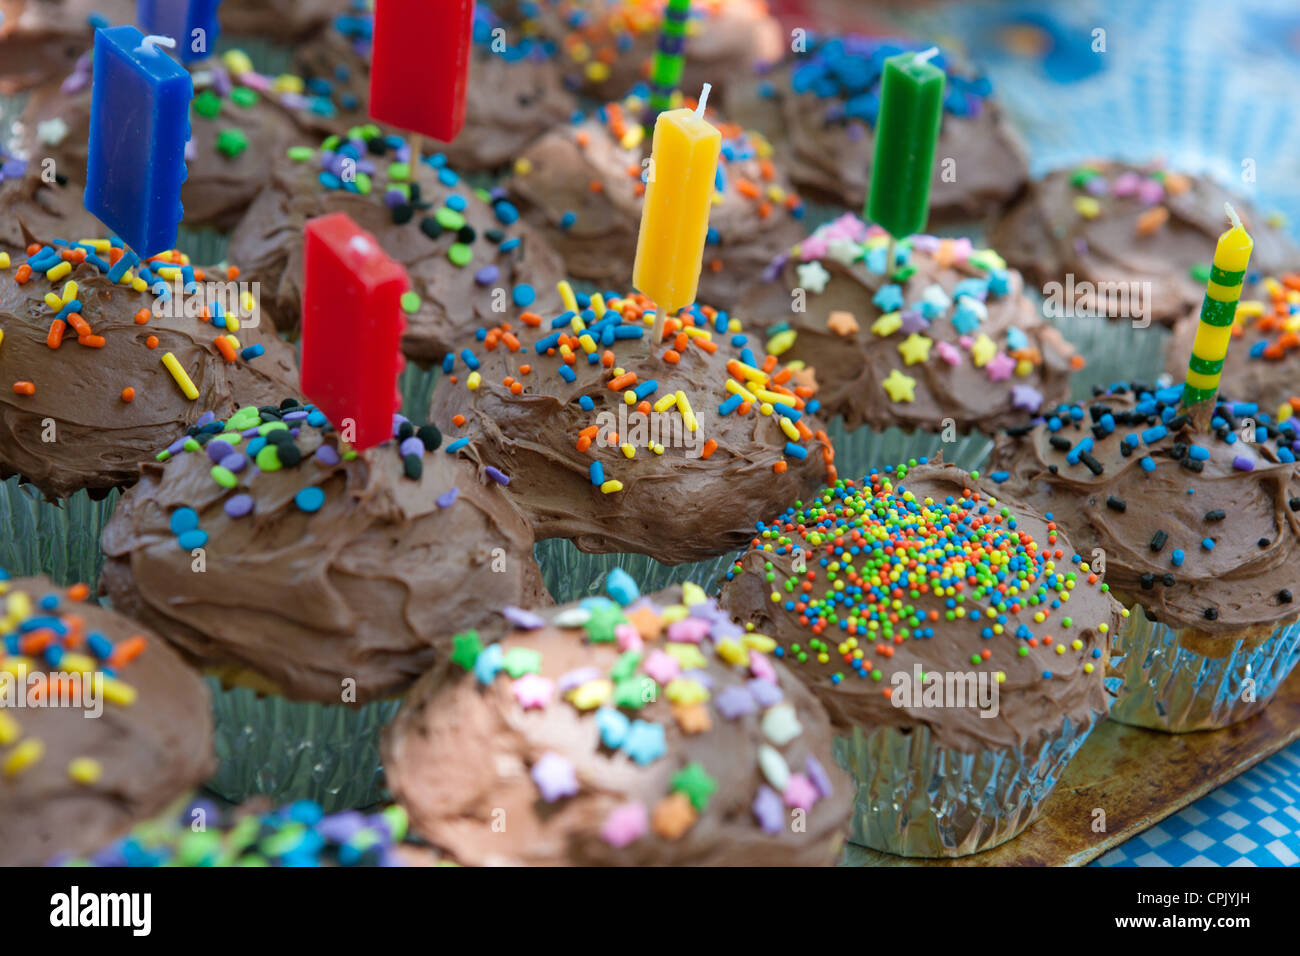 Geburtstag-Muffins mit Streuseln verziert. Stockfoto